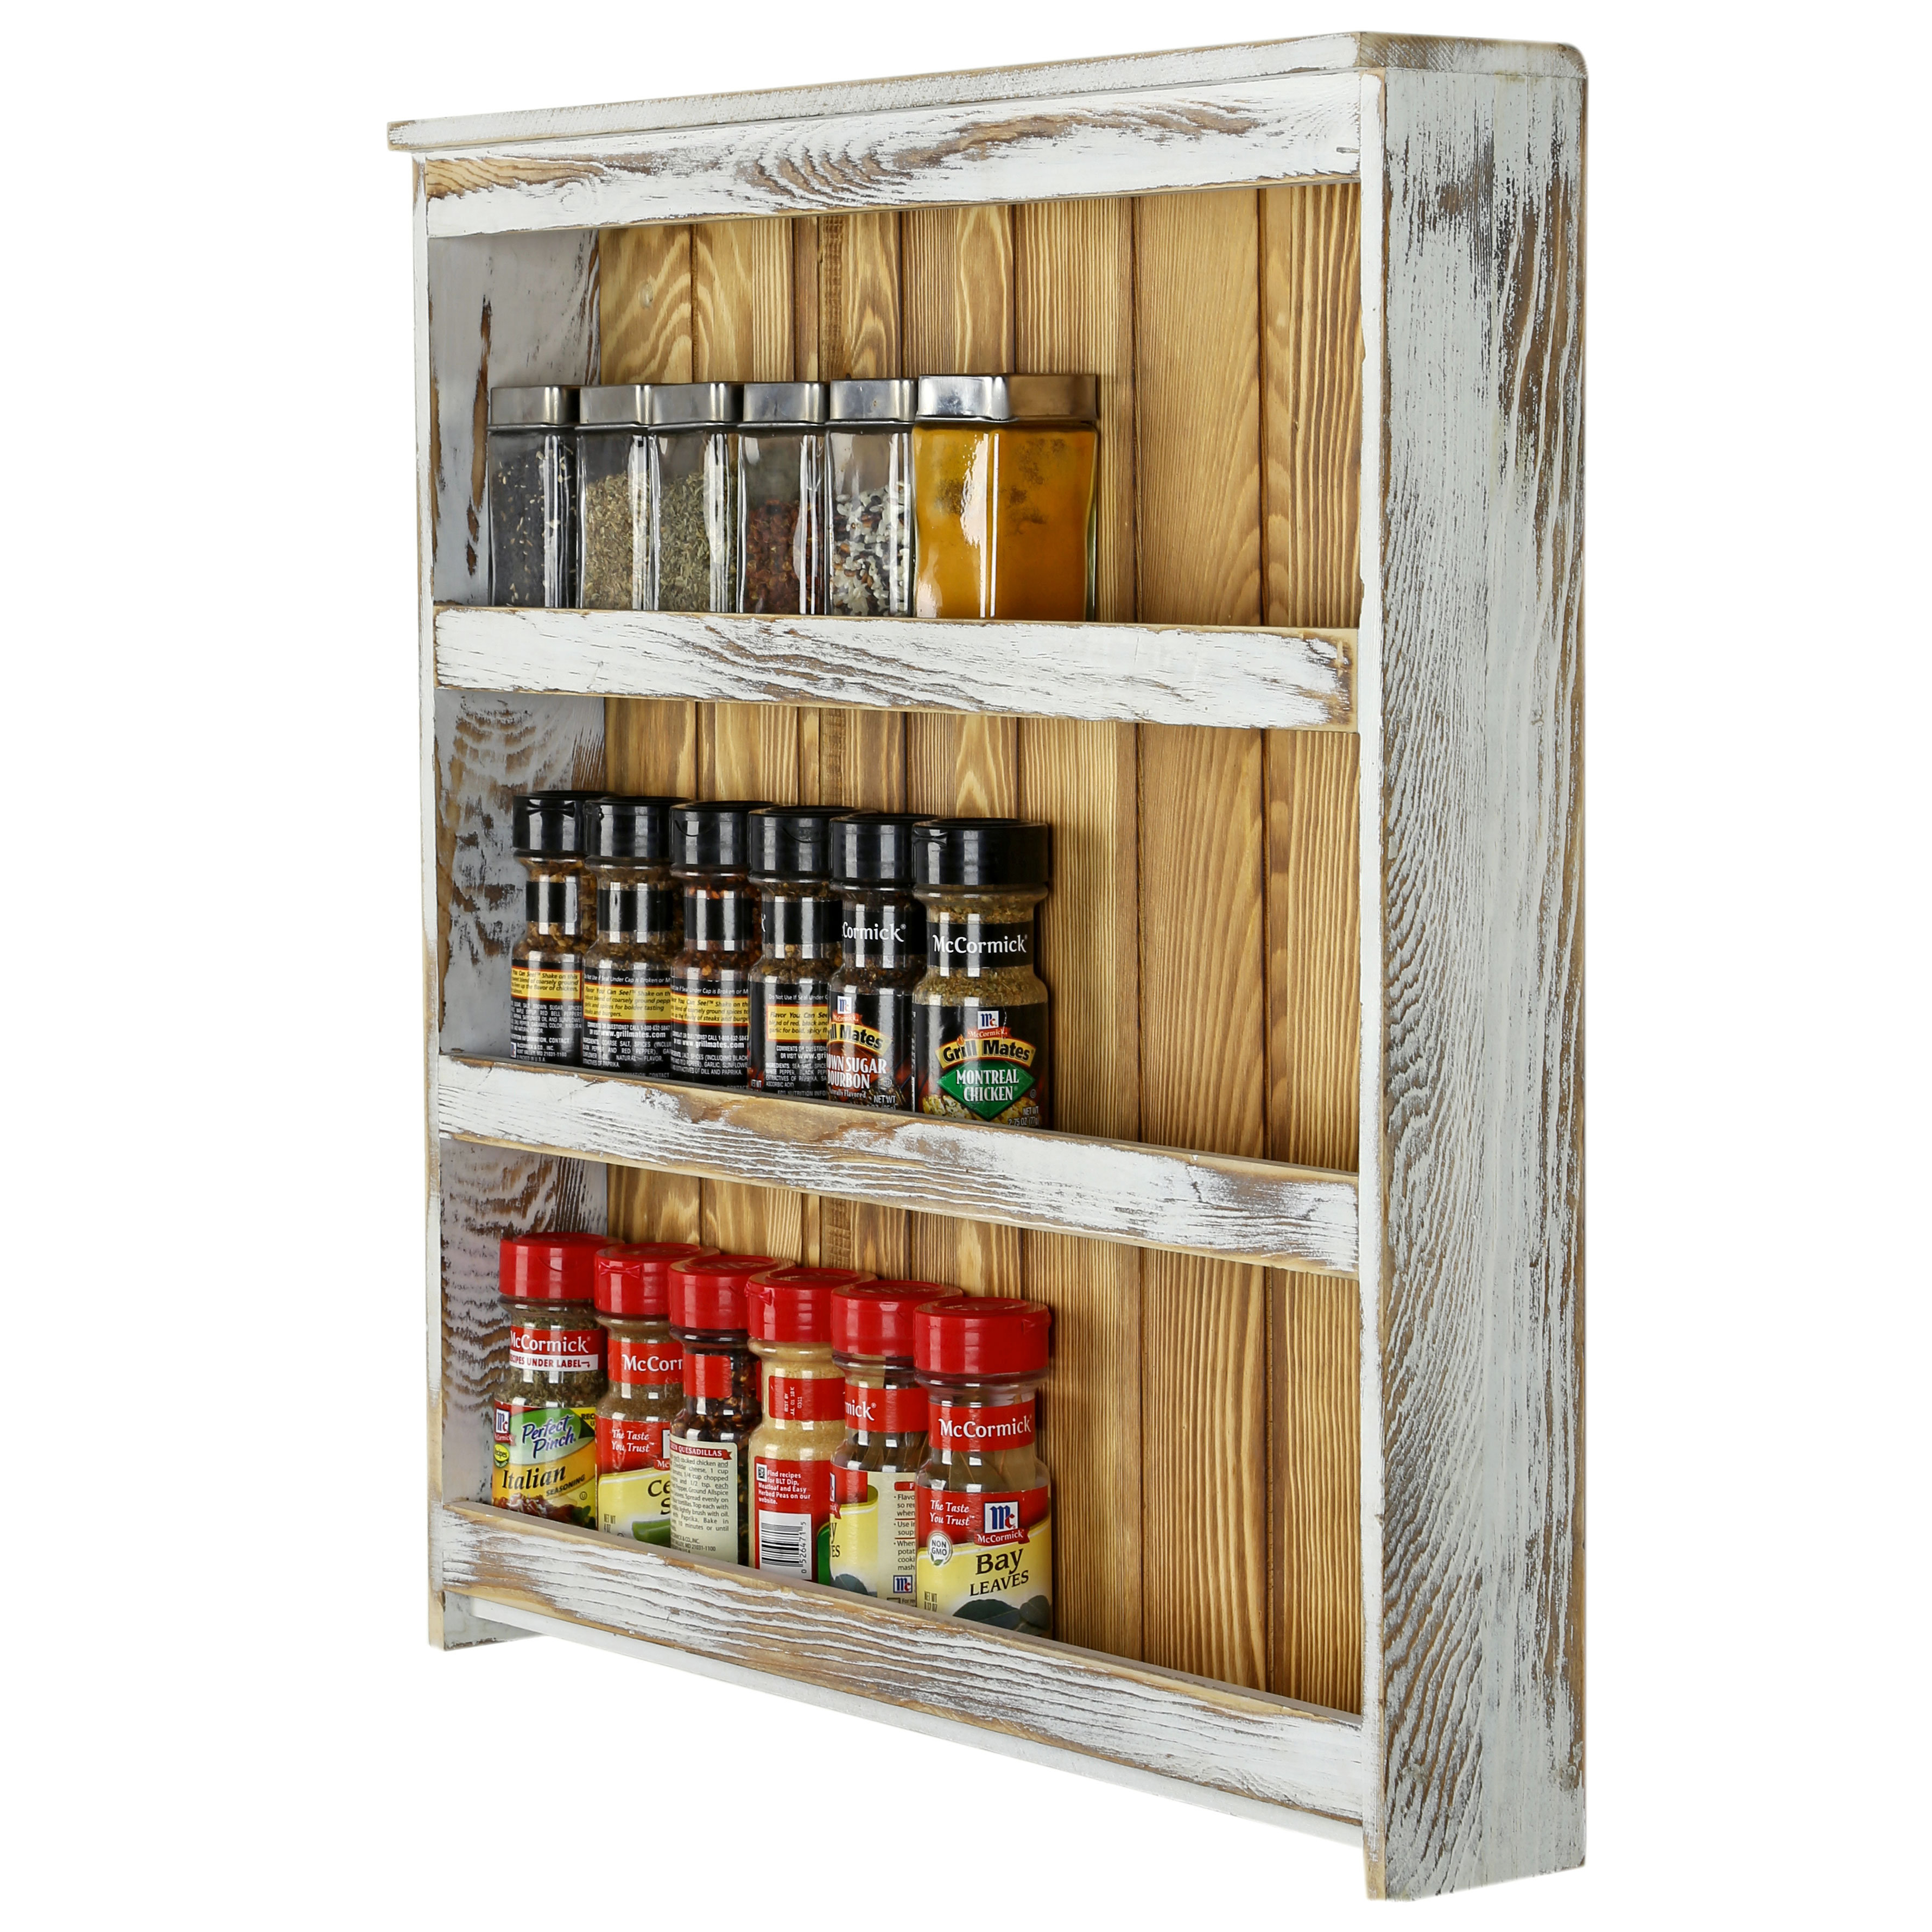 Distressed Wood Spice Rack Storage Organizer Shelf, 3 Tier